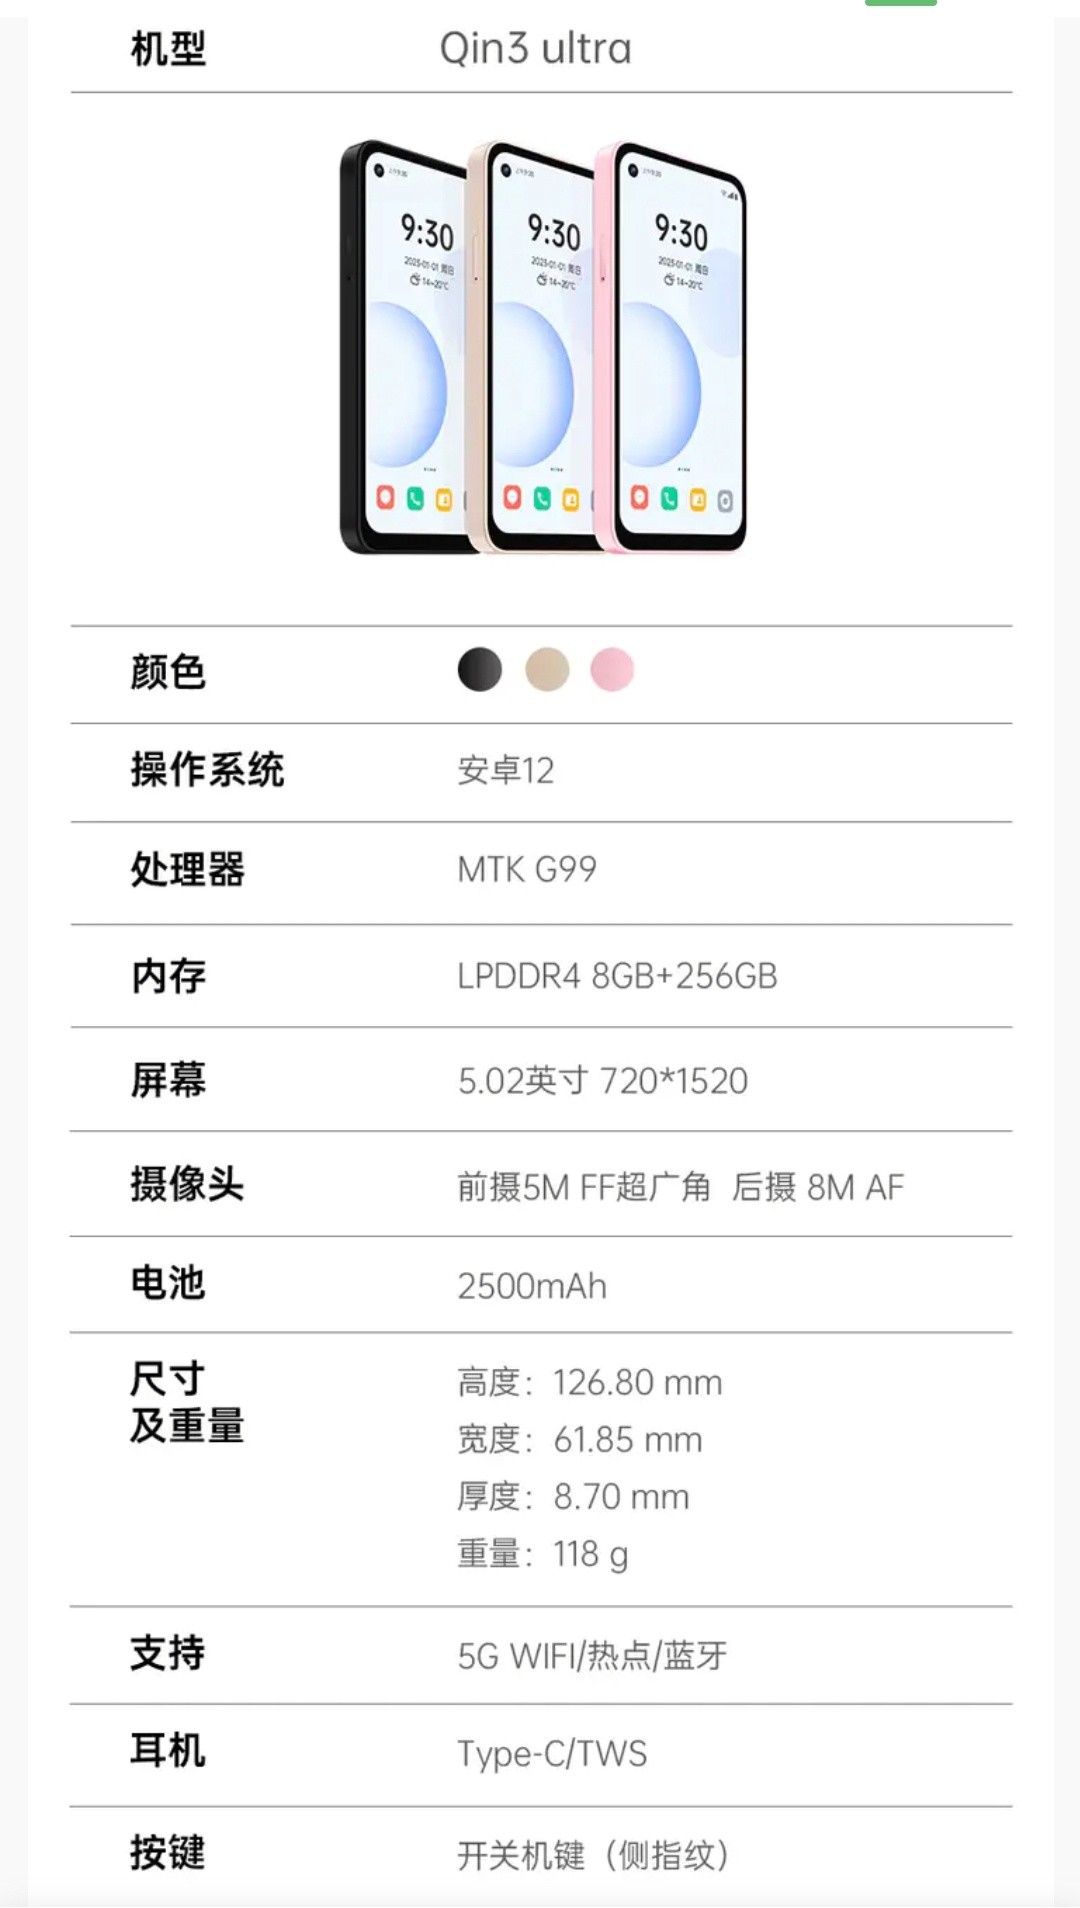 多亲推出 Qin3 Ultra 手机：双系统可选、5.02英寸屏、支持小爱同学